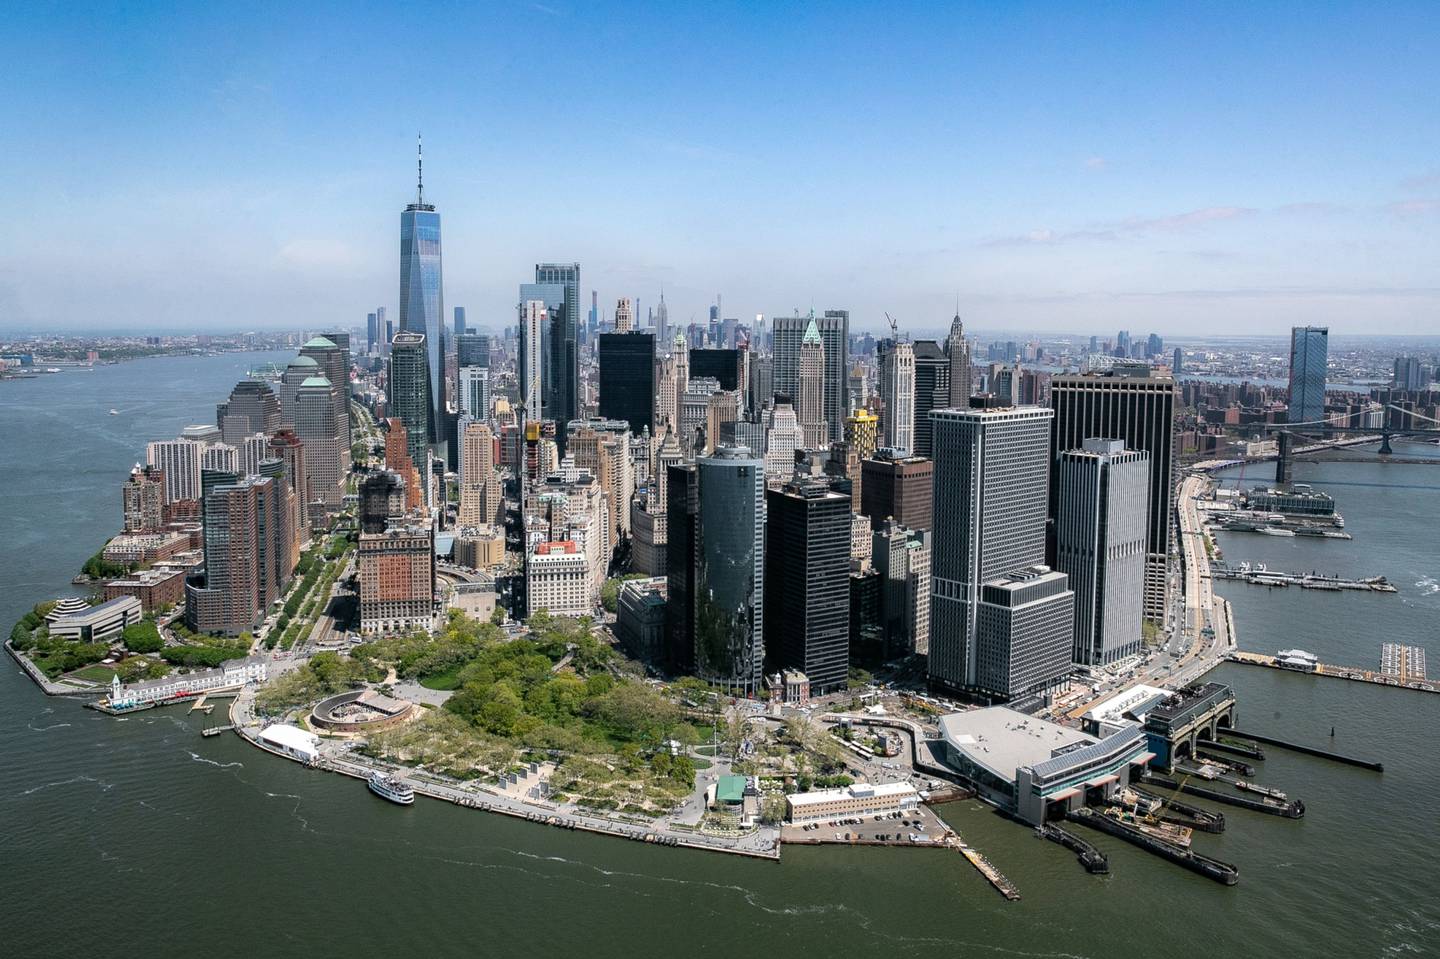 El horizonte del bajo Manhattan se ve durante un paseo en helicóptero de Blade Urban Air Mobility Inc. sobre el Distrito Financiero de Nueva York, Estados Unidos, el martes 7 de mayo de 2019.